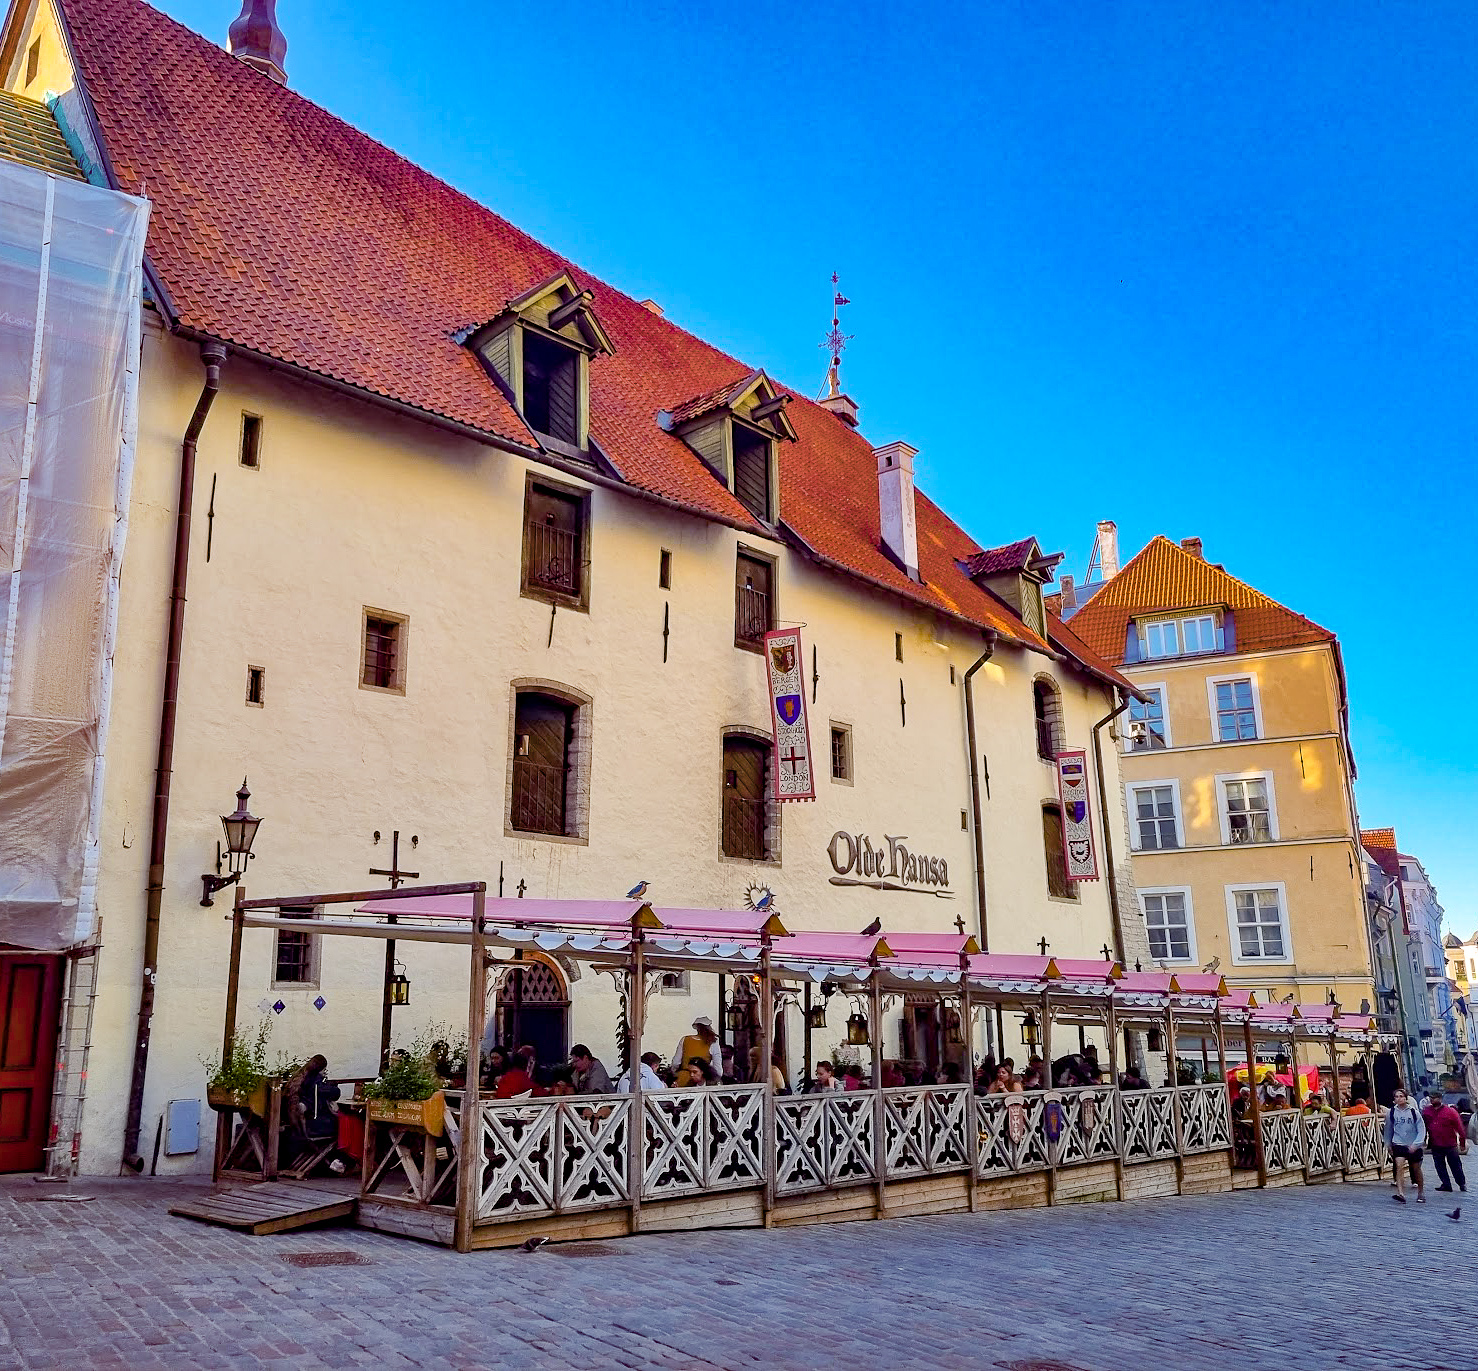 The Best Medieval Restaurant in Tallinn - Olde Hansa Review